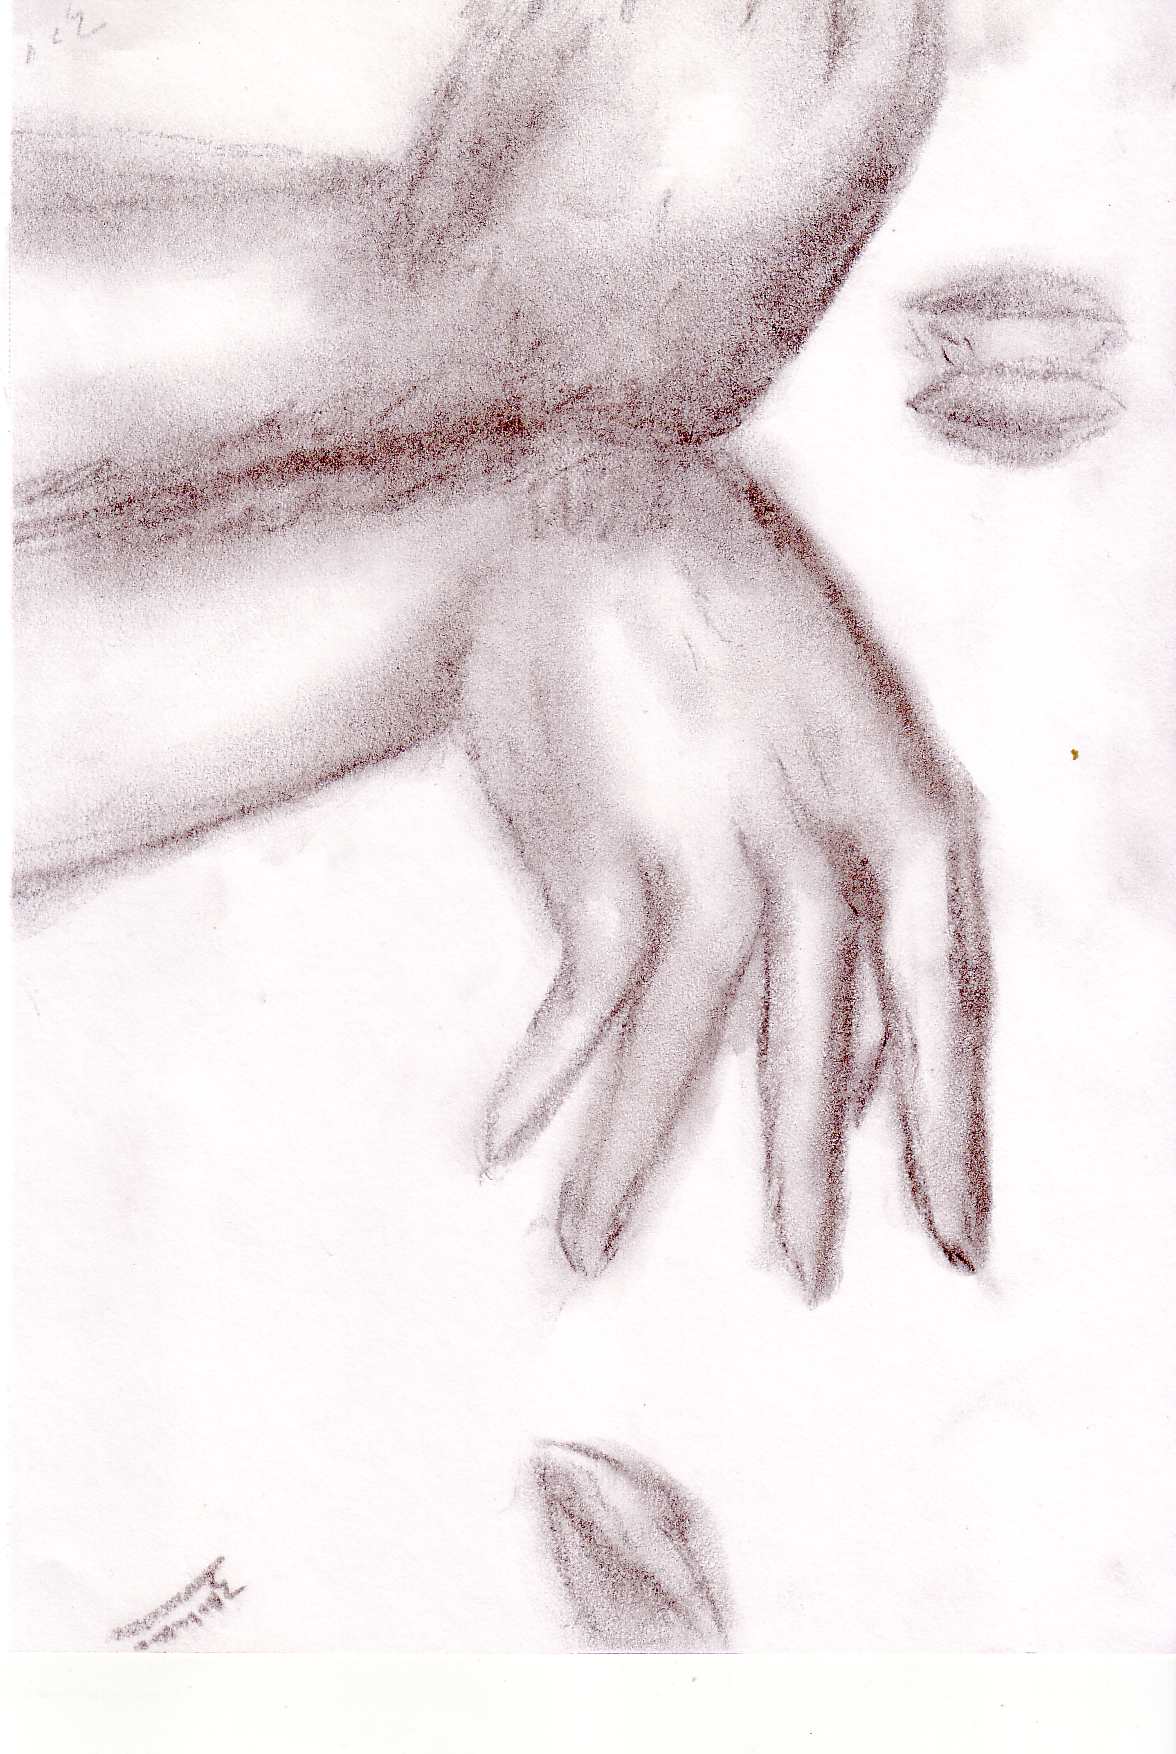 Hands by znikki